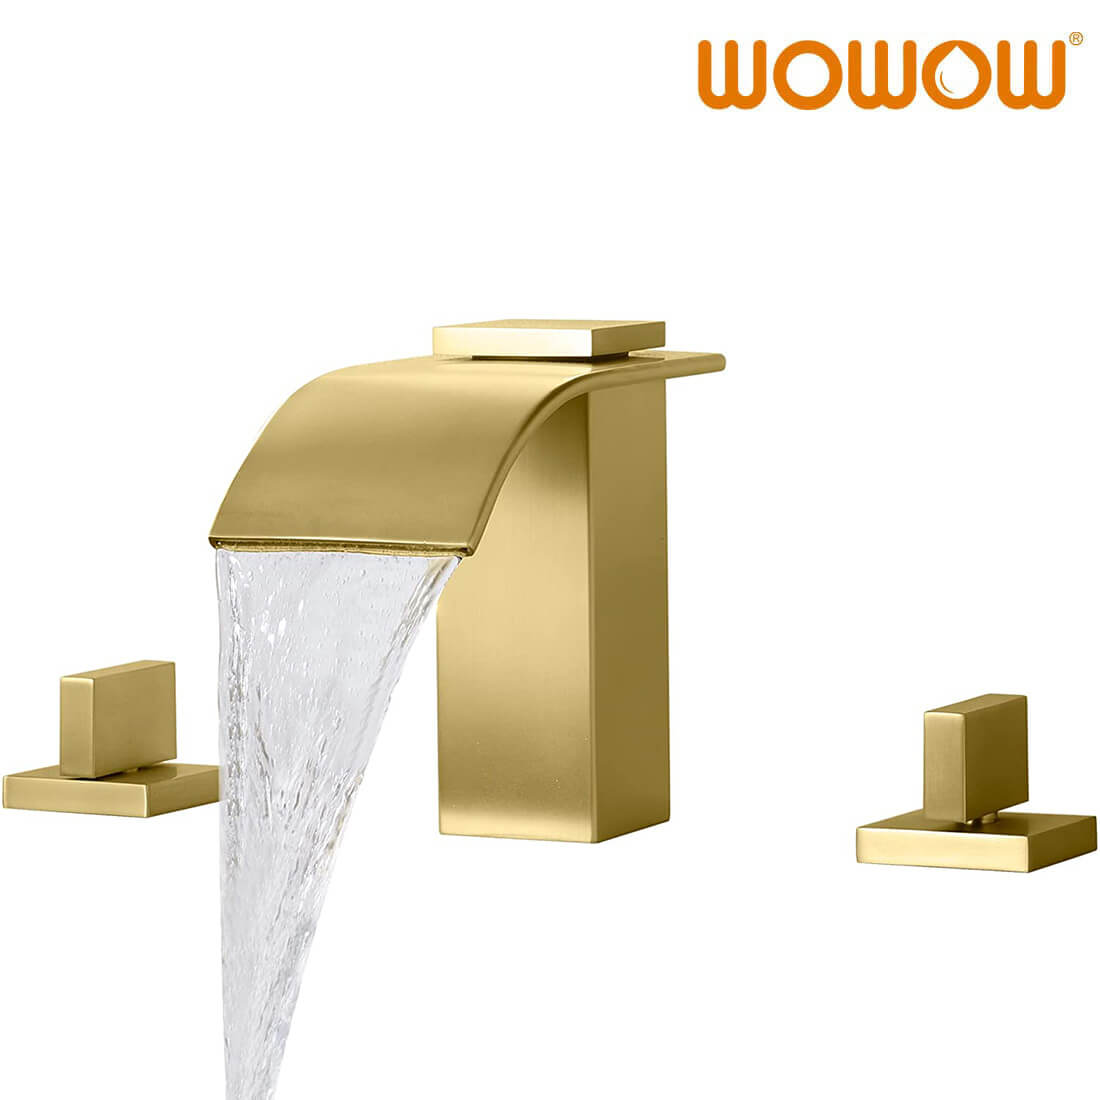 wowow grifo de baño en cascada dourada cepillado